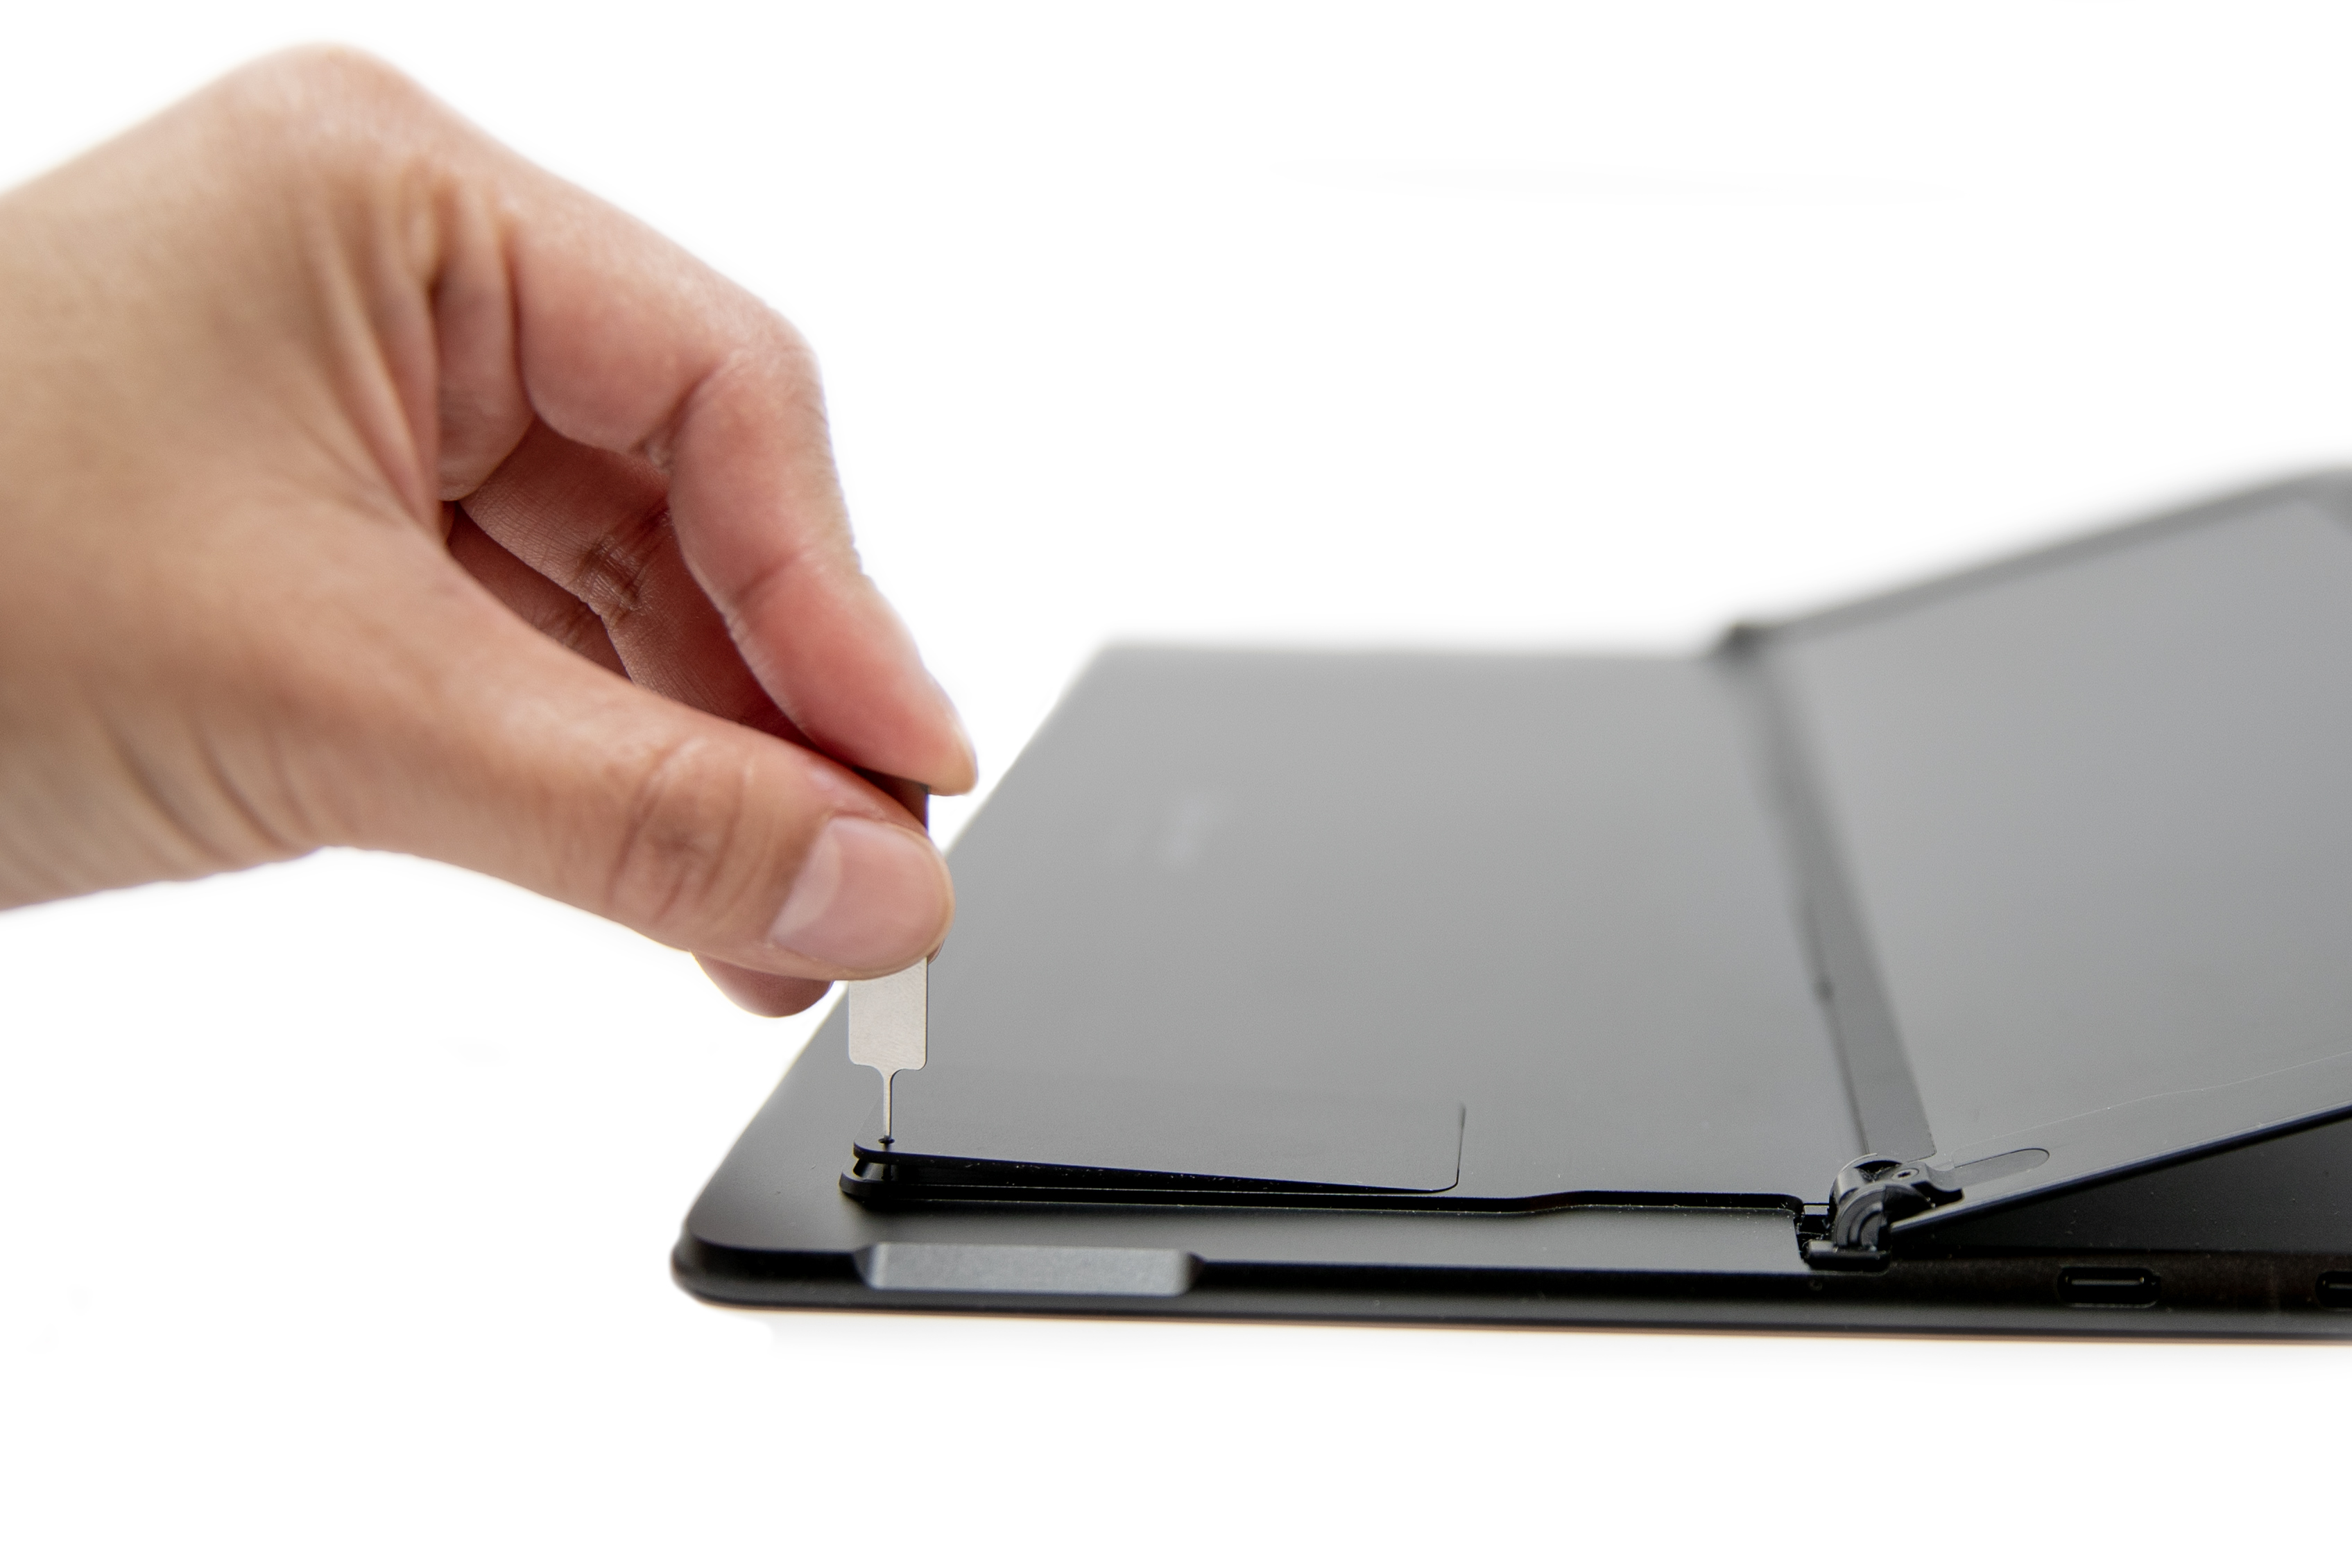 Ruka osobe je umetnula SIM izbacivanje u Surface Pro X.